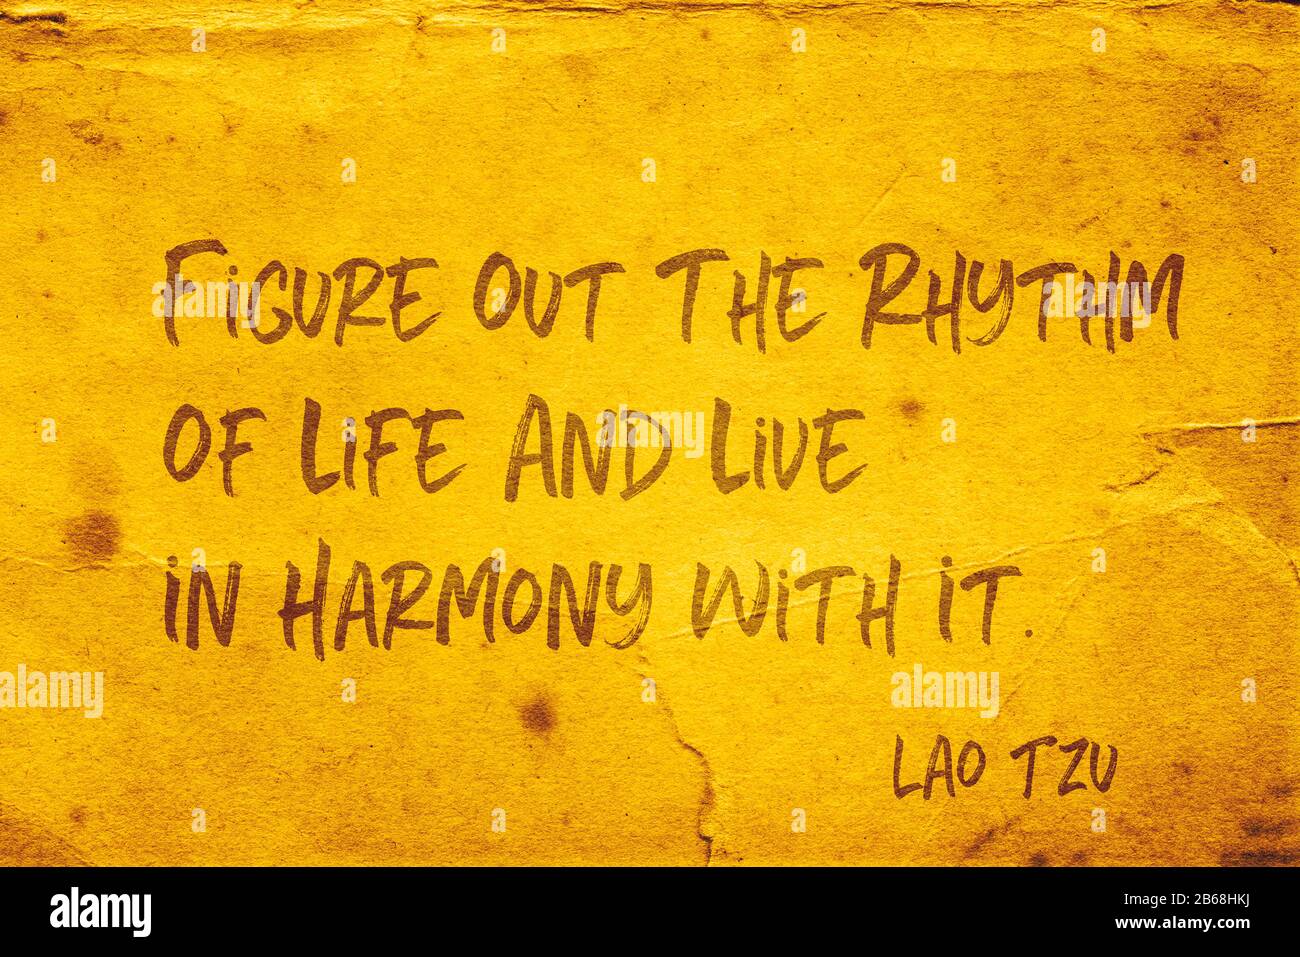 Entziffern Sie den Rhythmus des Lebens und leben Sie in Harmonie damit - das Zitat des alten chinesischen Philosophen Lao Tzu, das auf grunge gelbem Papier gedruckt ist Stockfoto